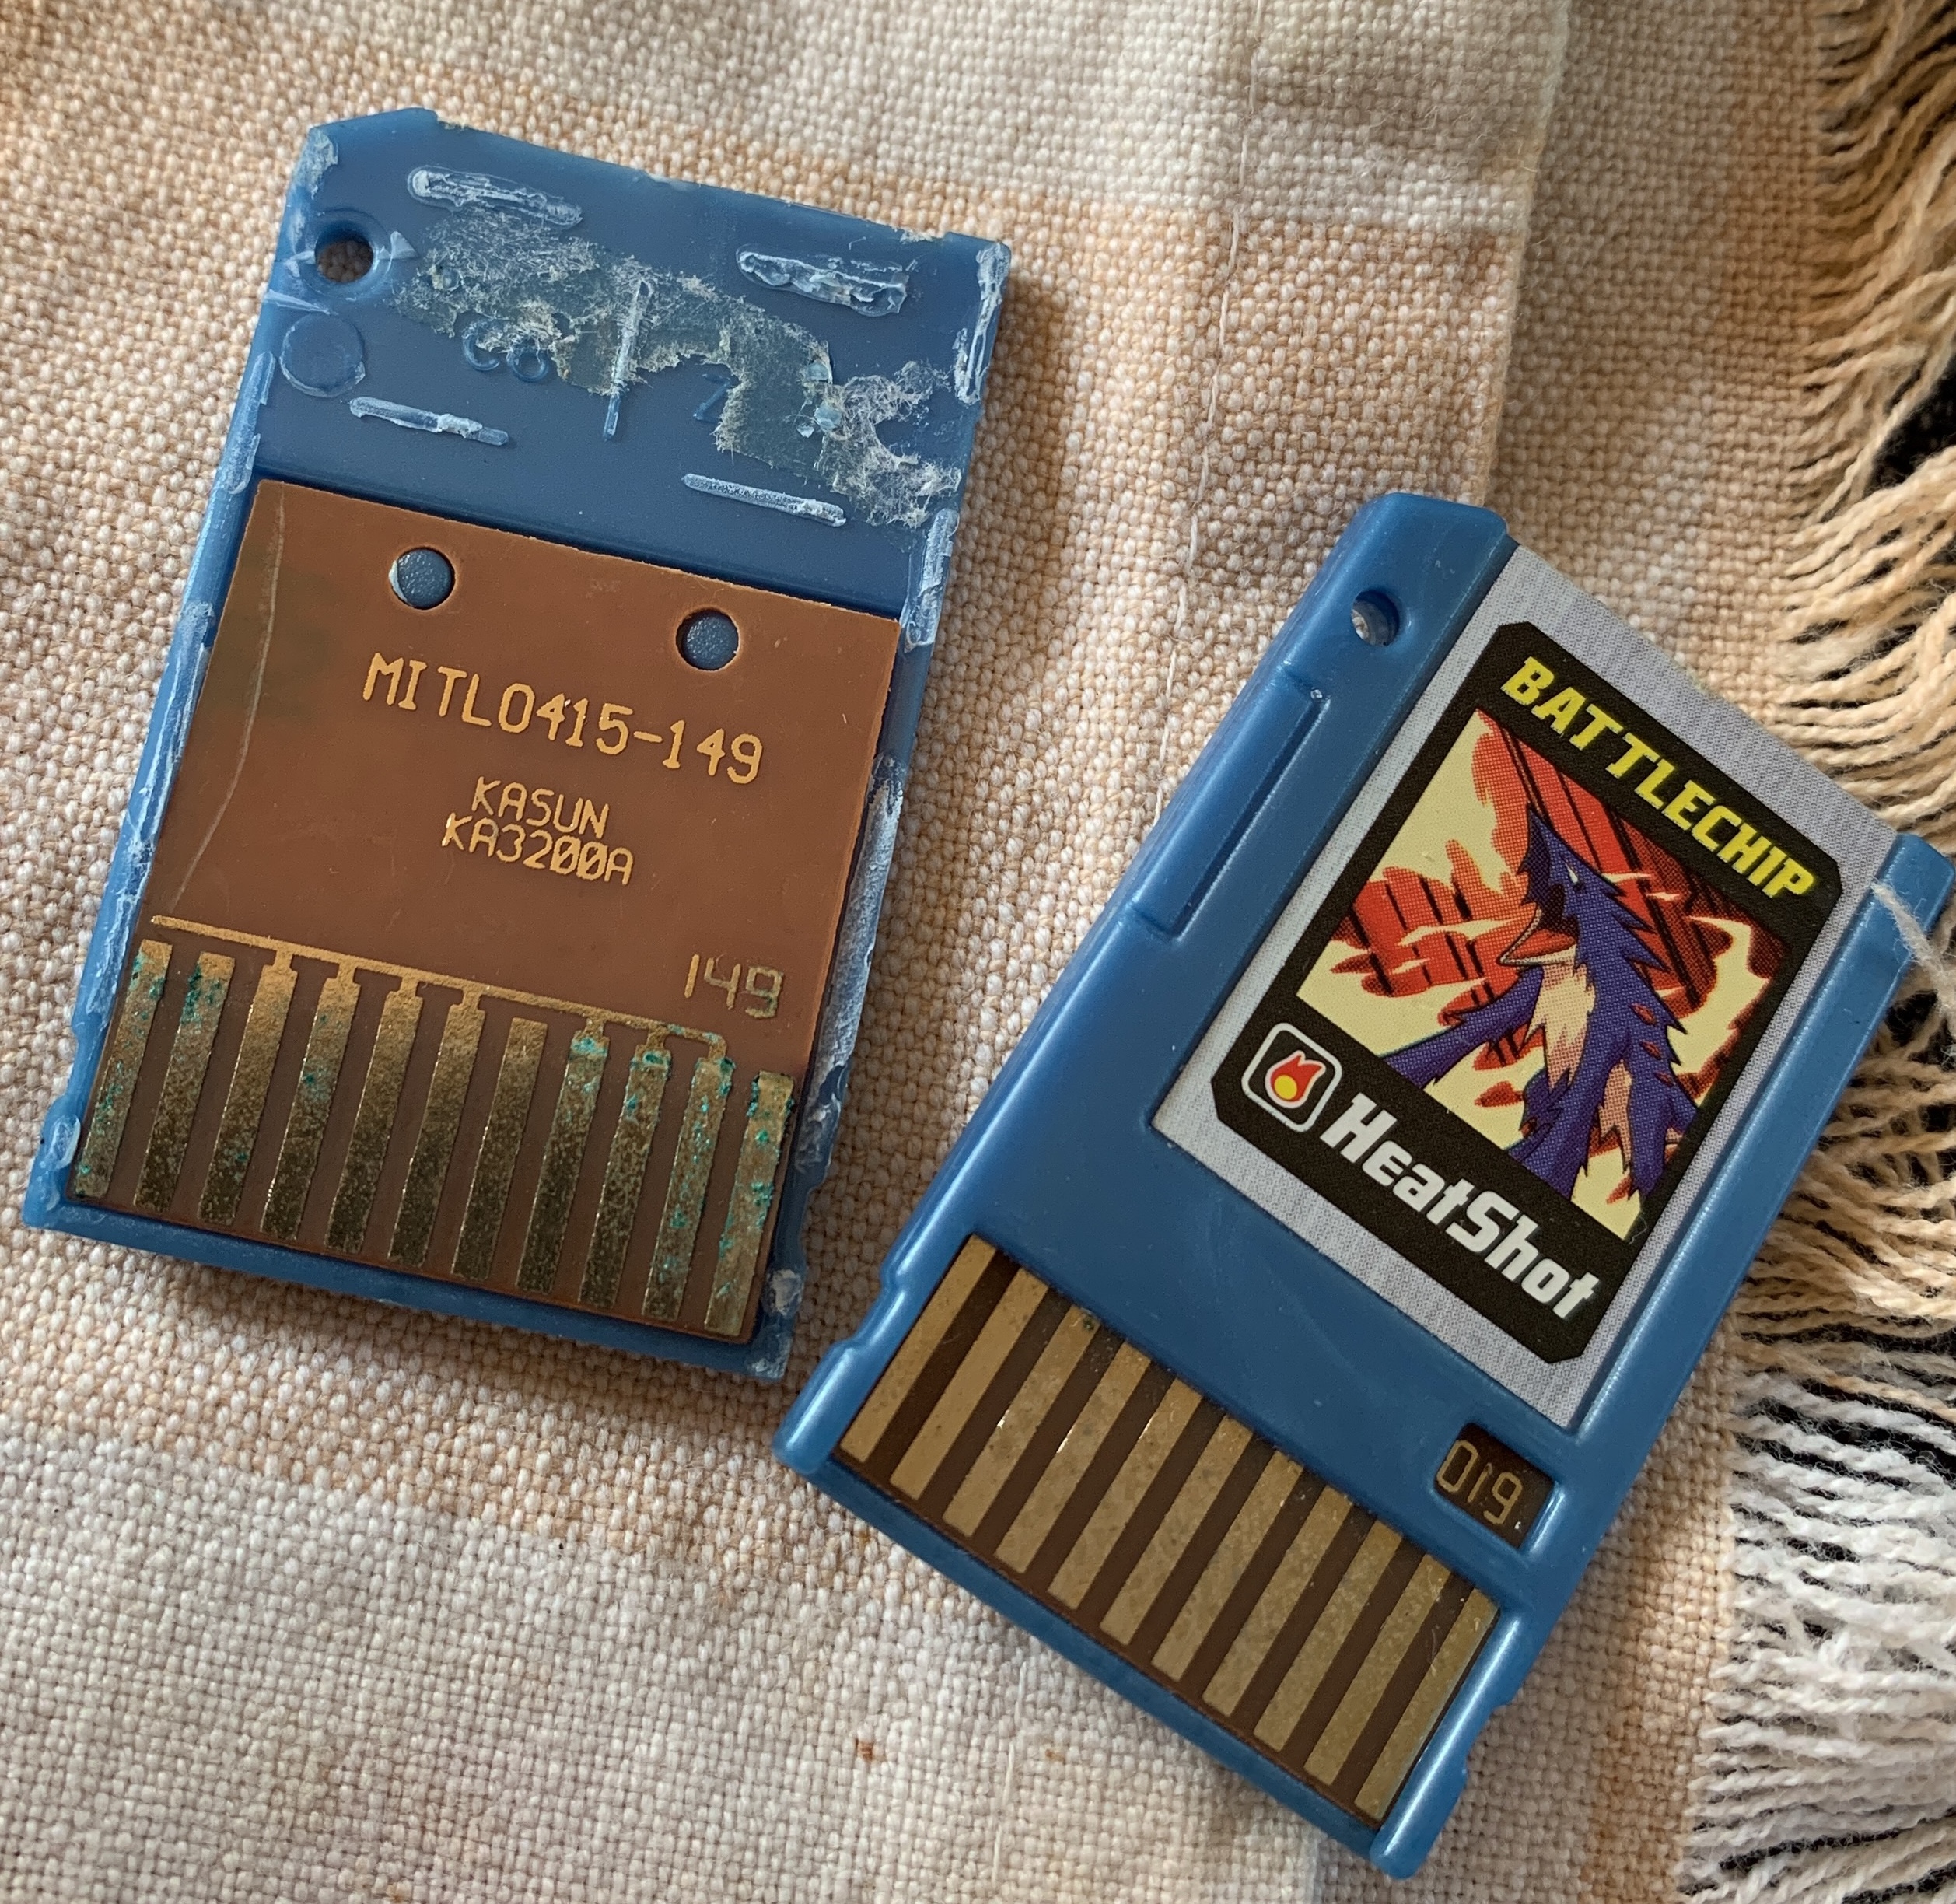 A cracked open Megaman Battle Network toy cartridge